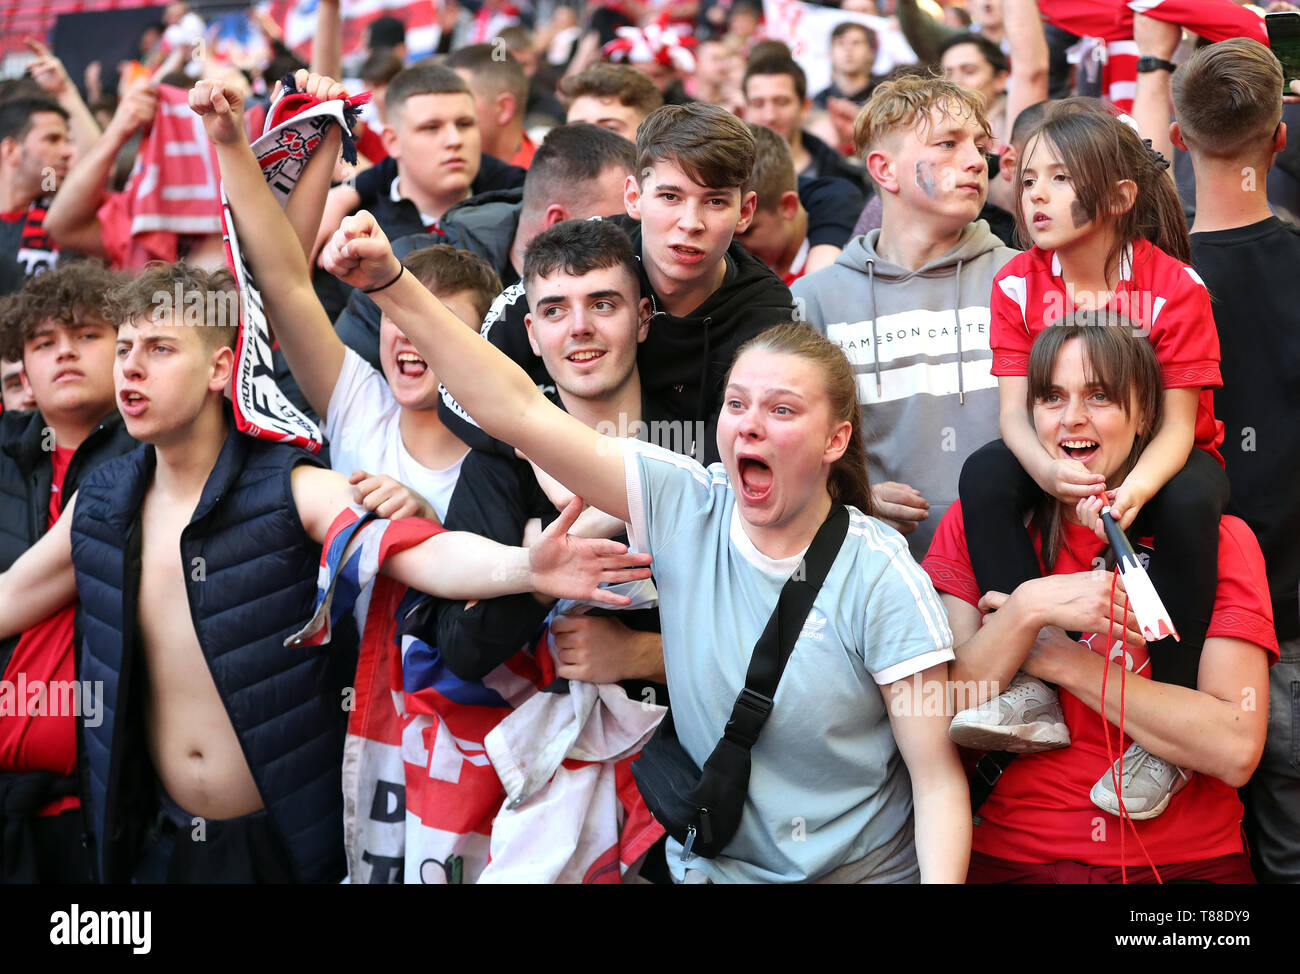 Salford City fans durante la Liga Nacional Vanarama play-off final en el estadio de Wembley, Londres. Foto de stock